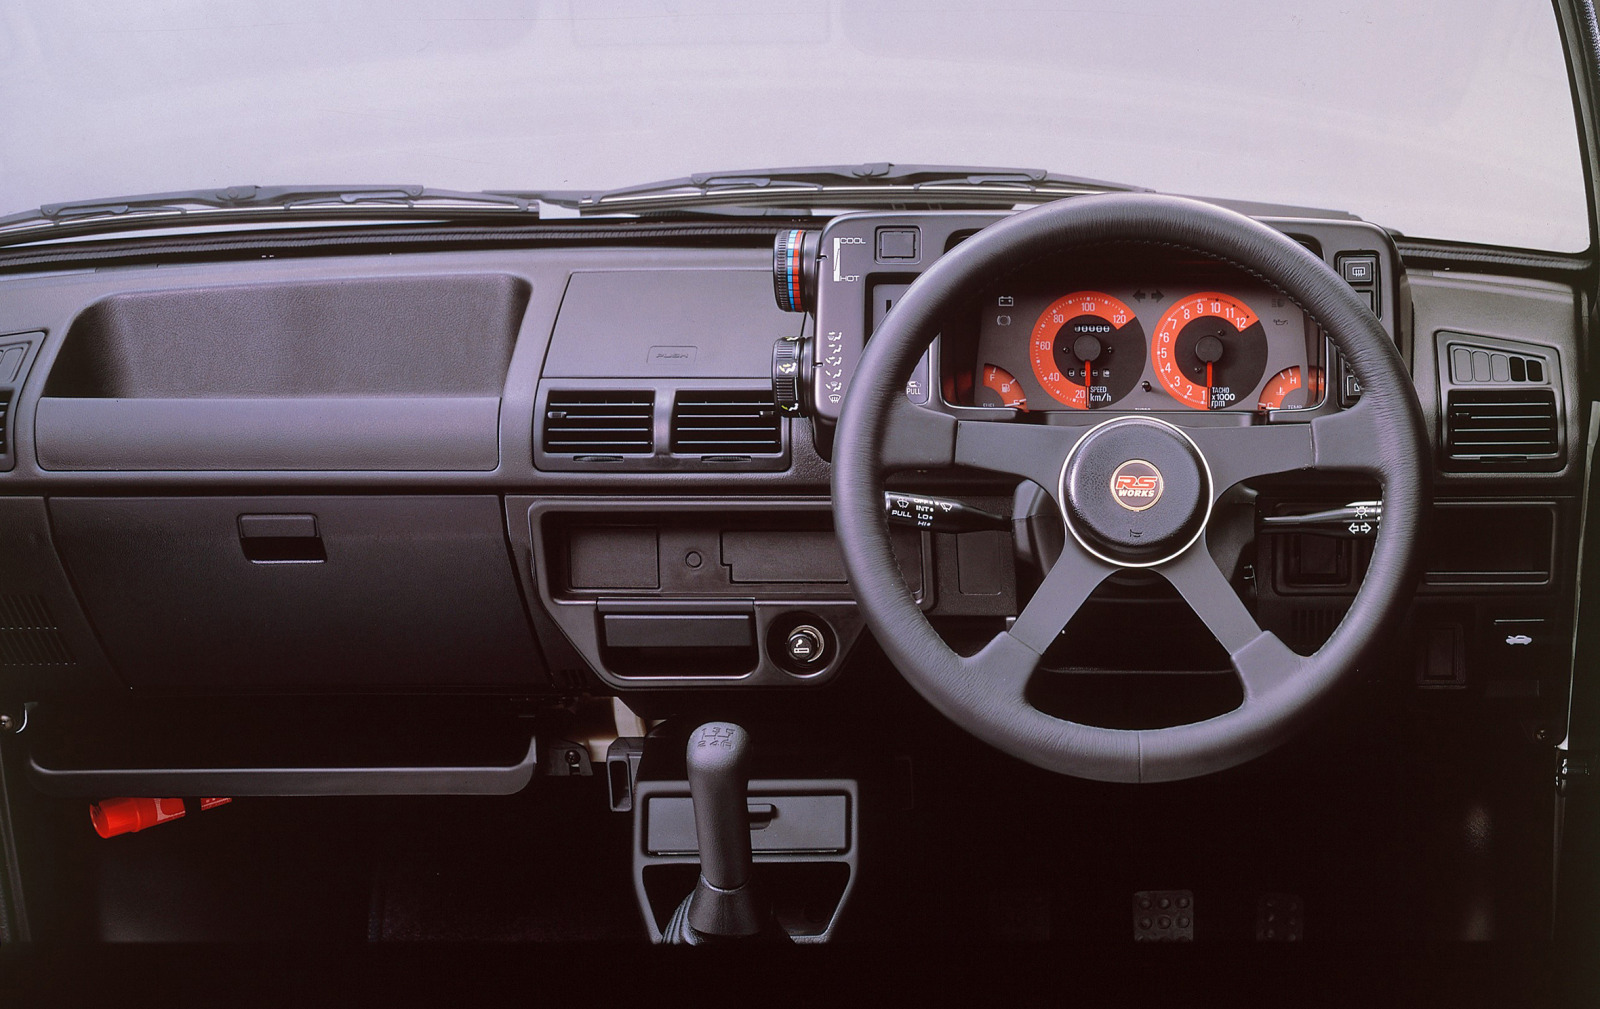 軽自動車の最高出力64psの自主規制を作った初代アルトワークス登場 スズキ100年史 第回 第5章 その2 Clicccar Com